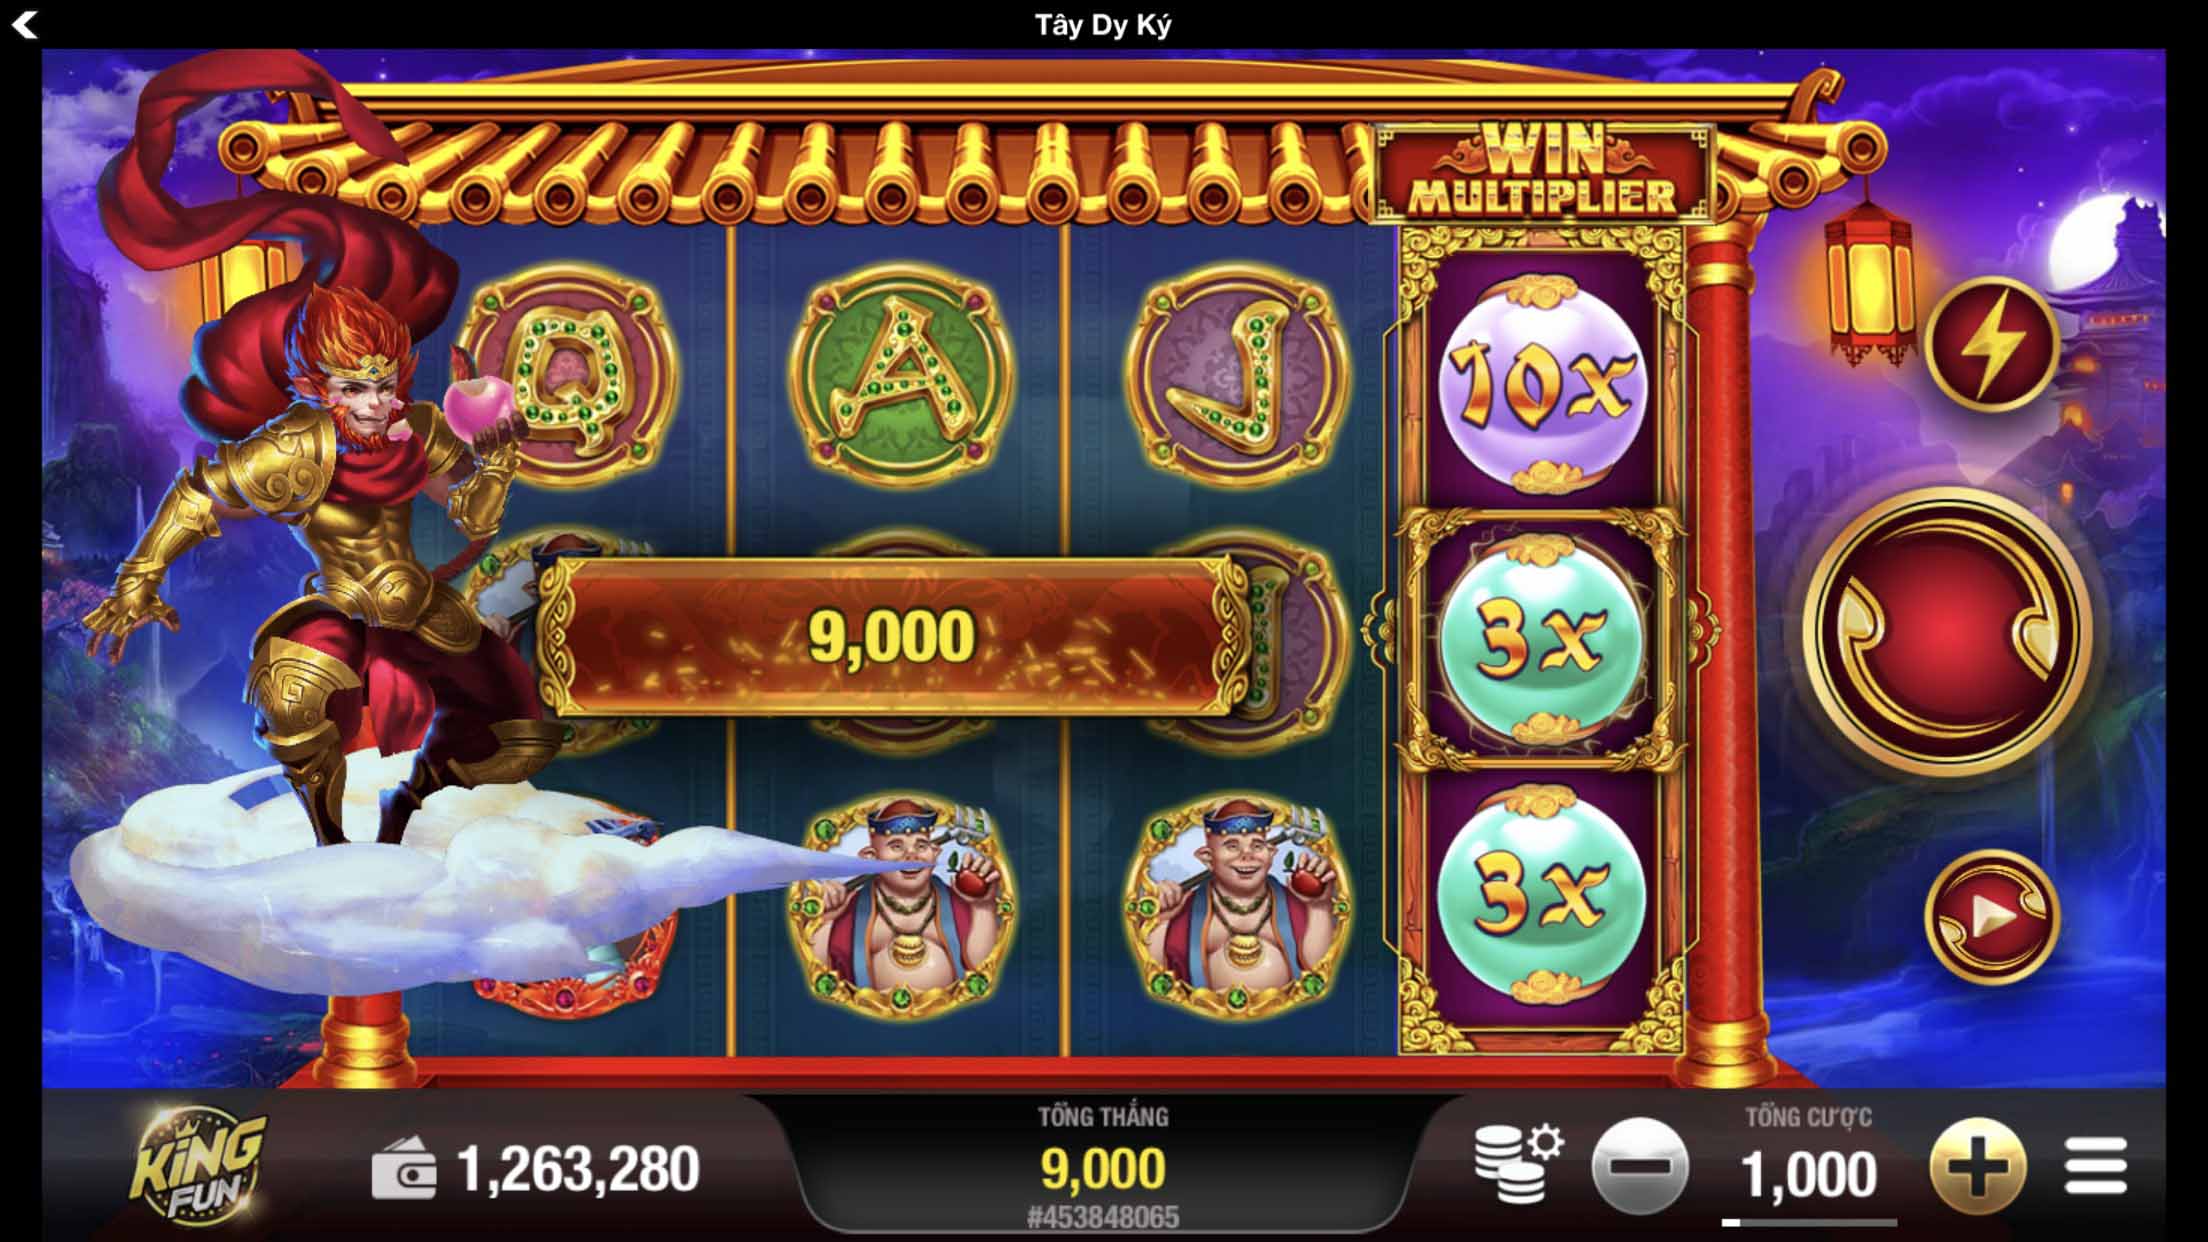 Kingfun: Hướng dẫn chơi Slot game đổi thưởng Tây Du Ký